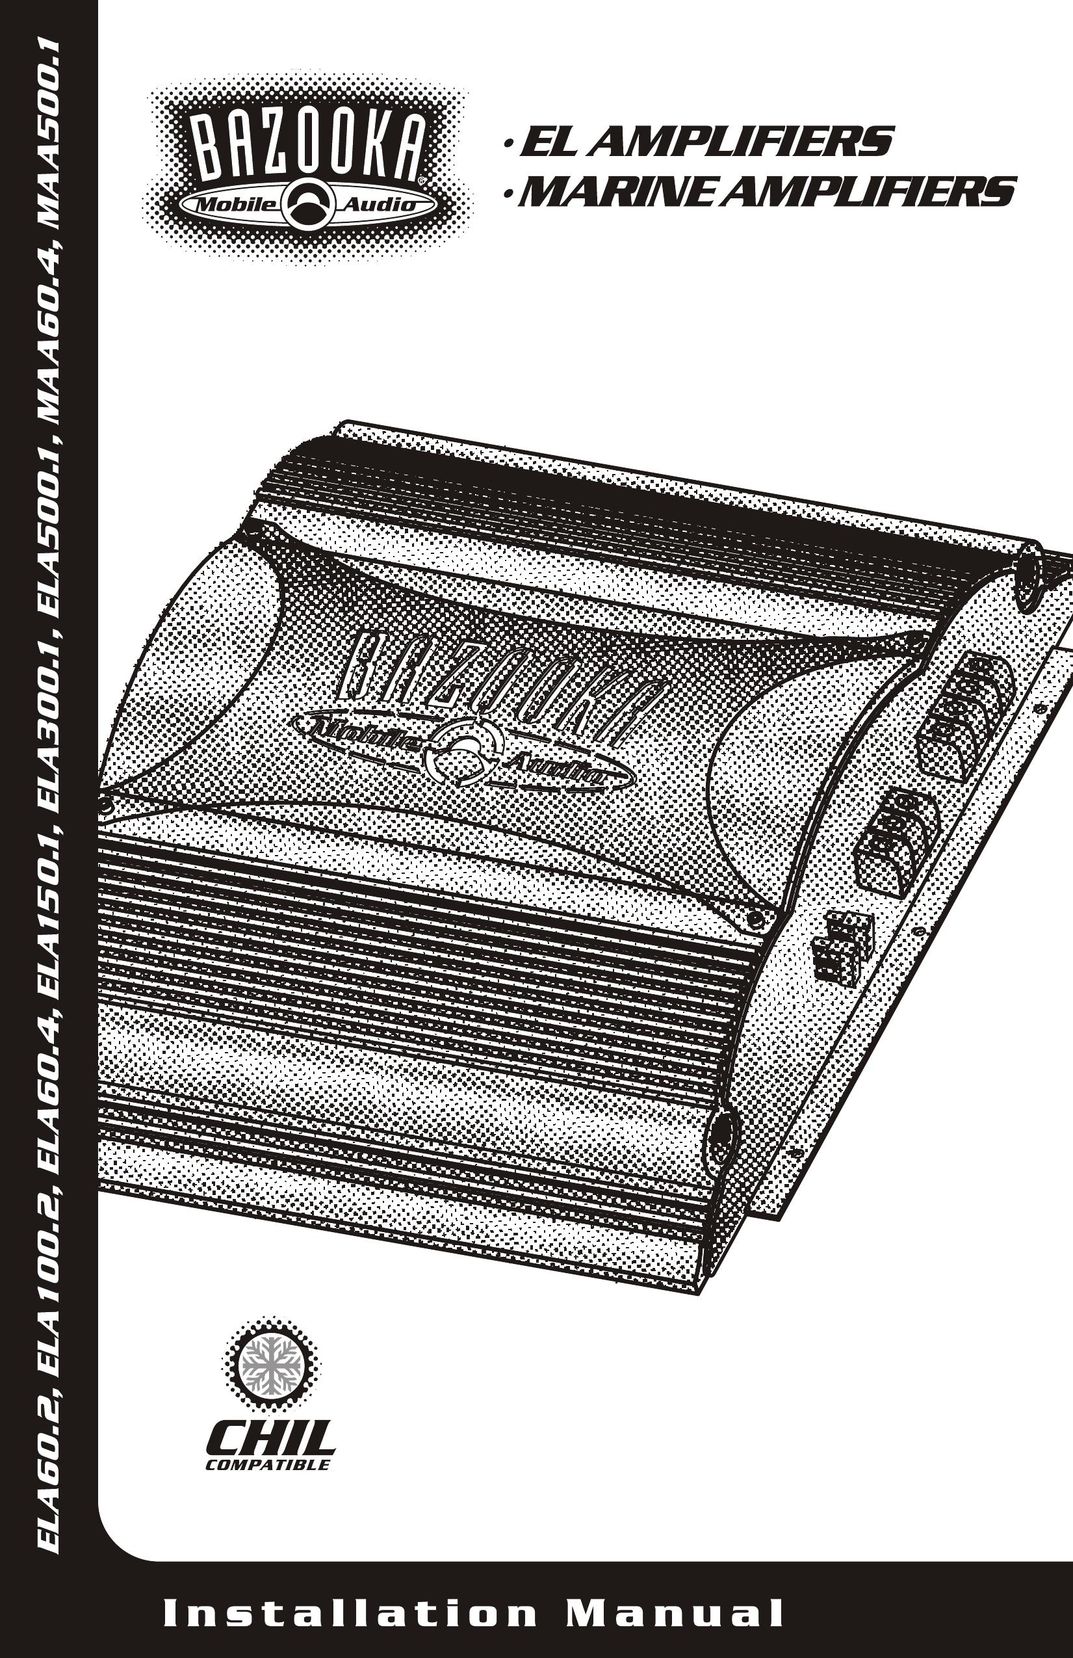 Bazooka MAA60.4 Car Amplifier User Manual